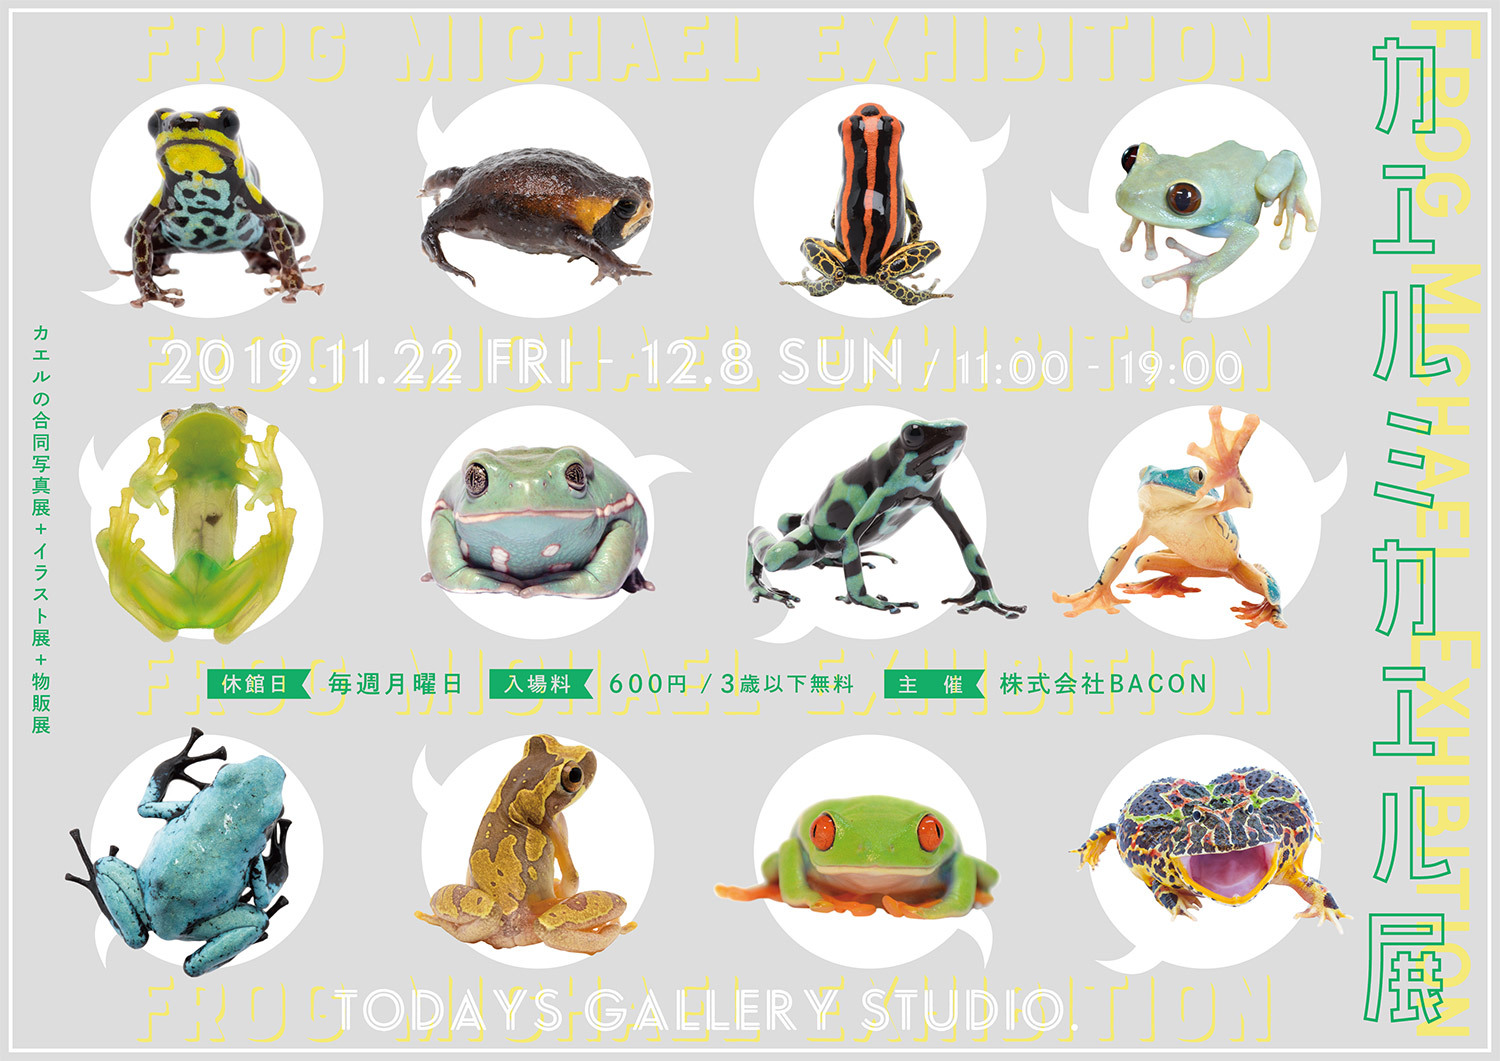 リアルなカエルの美しさに注目した カエルミカエル展 が11 22 12 8に東京で開催 ちょいグロなカエル ブースも登場 株式会社baconのプレスリリース